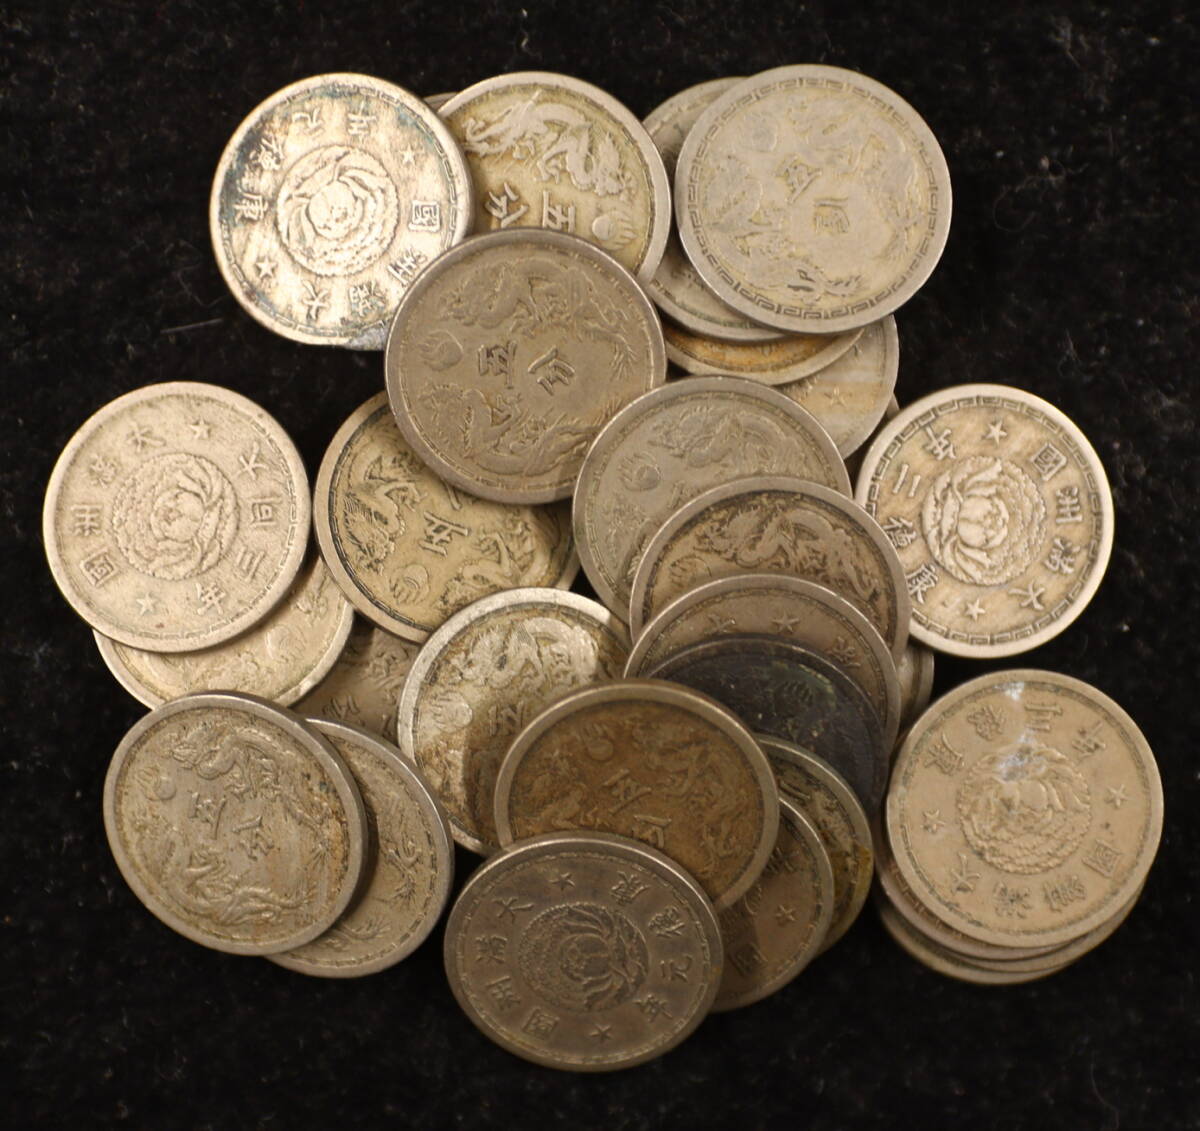 満州国貨幣 5分白銅貨 33枚 まとめて おまとめ 満州国 満洲コイン 満洲硬貨 古銭 コイン 硬貨 海外コイン 外国コインの画像1